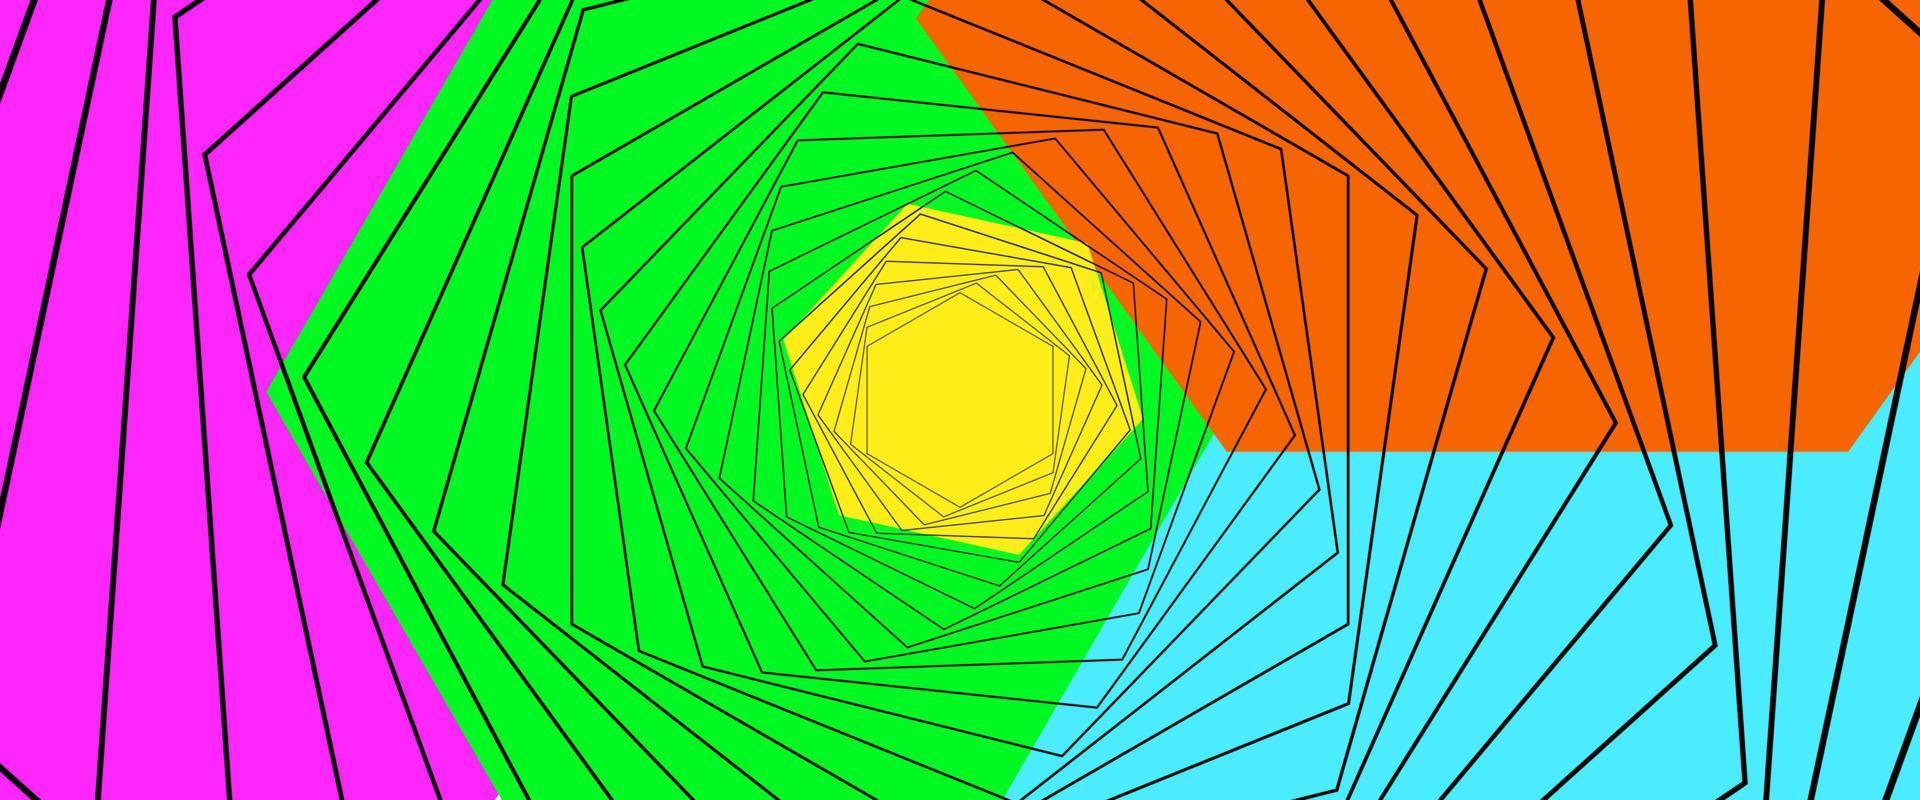 kleurrijke gebogen strepen en lijnen abstracte geometrische zakelijke achtergrond. vector ontwerp